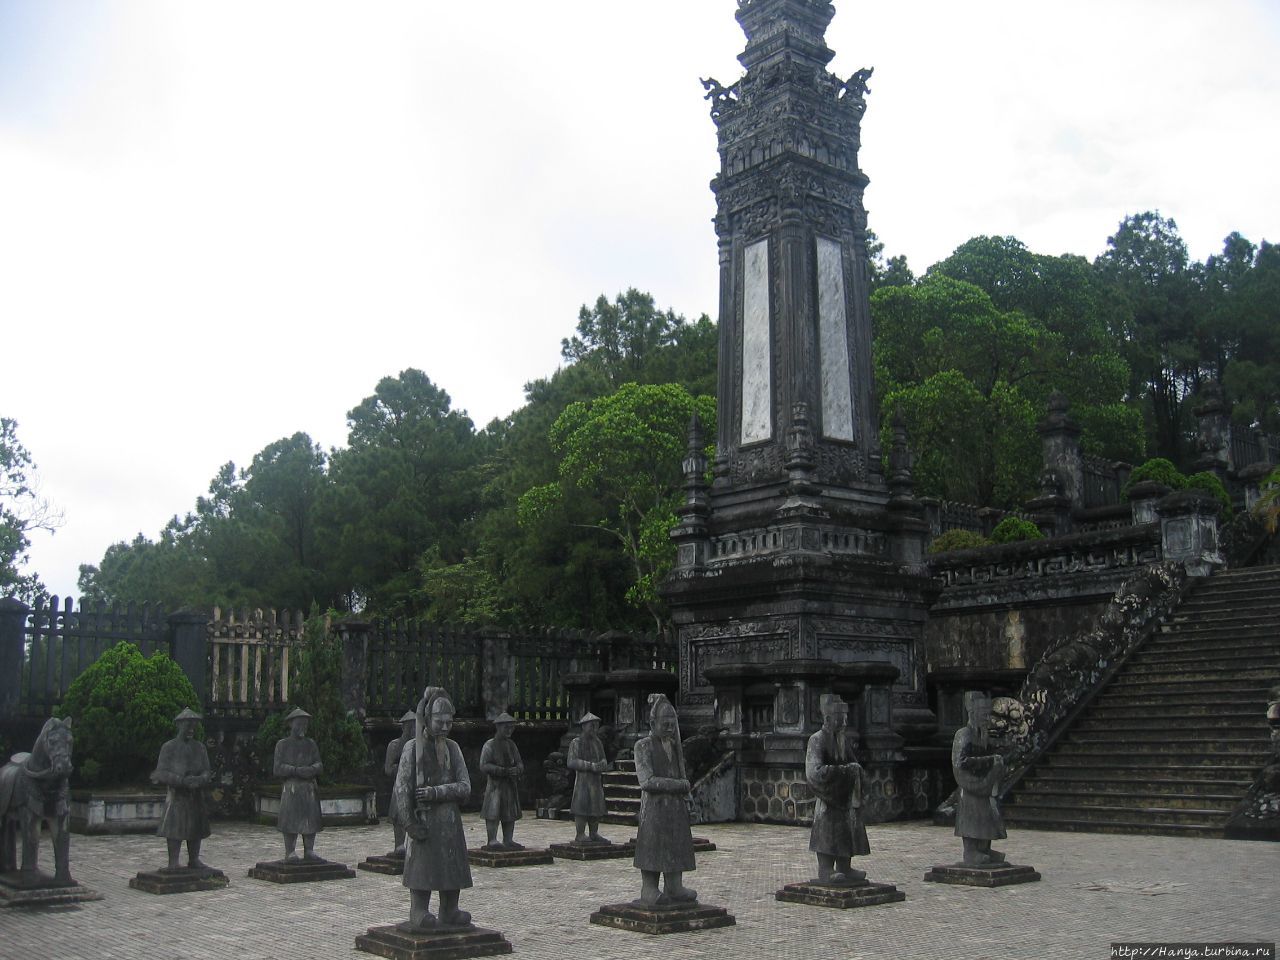 Хюэ. Гробница  императора Кхай Диня. Стела и фигуры  воинов Хюэ, Вьетнам